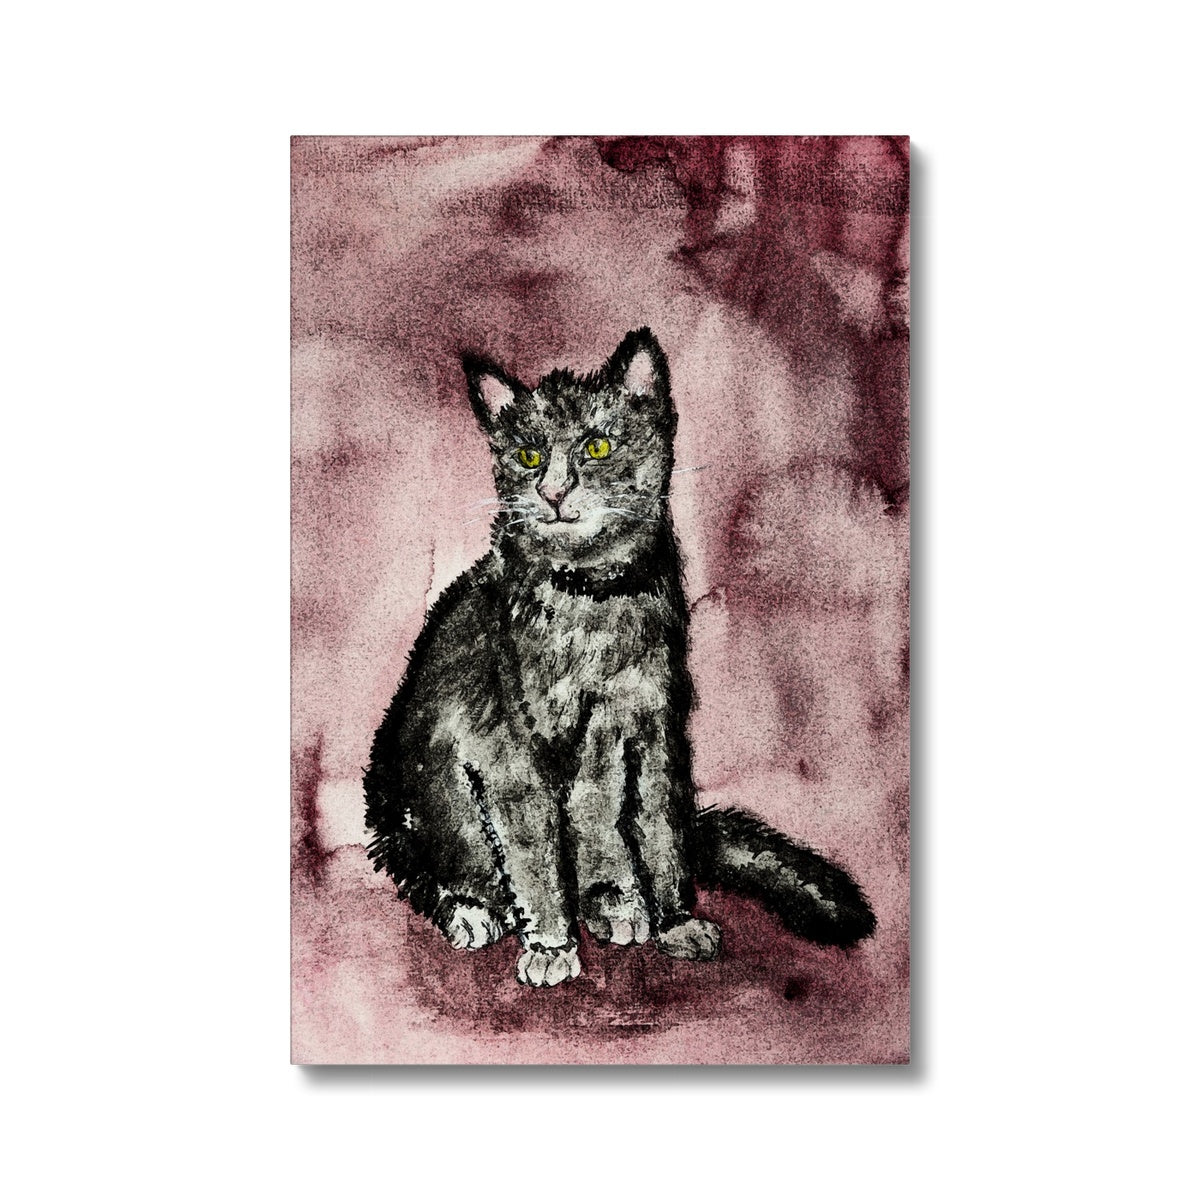 Splendid Black Cat Portrait Canvas